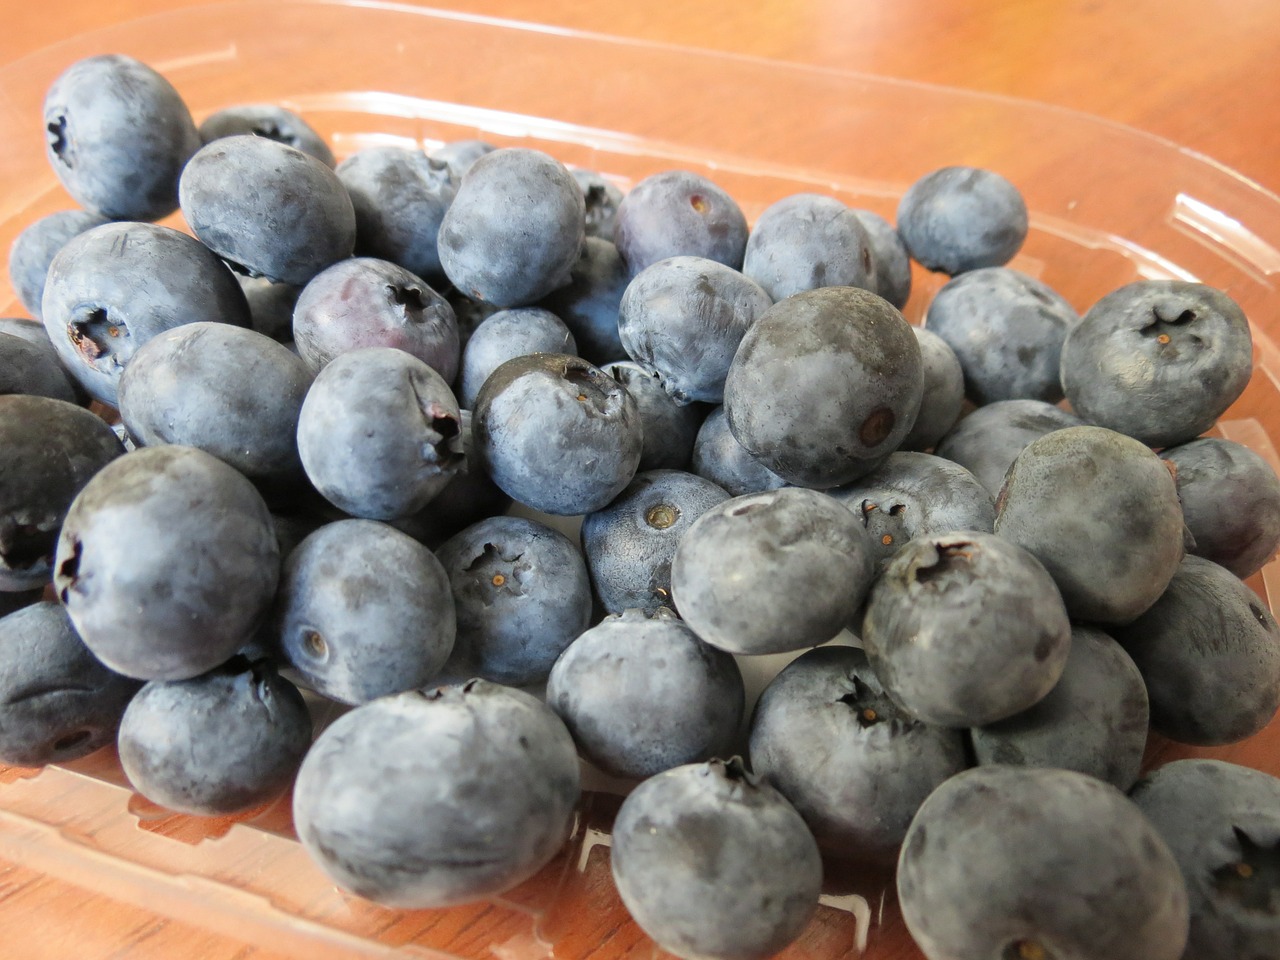 blueberries berries fruit free photo